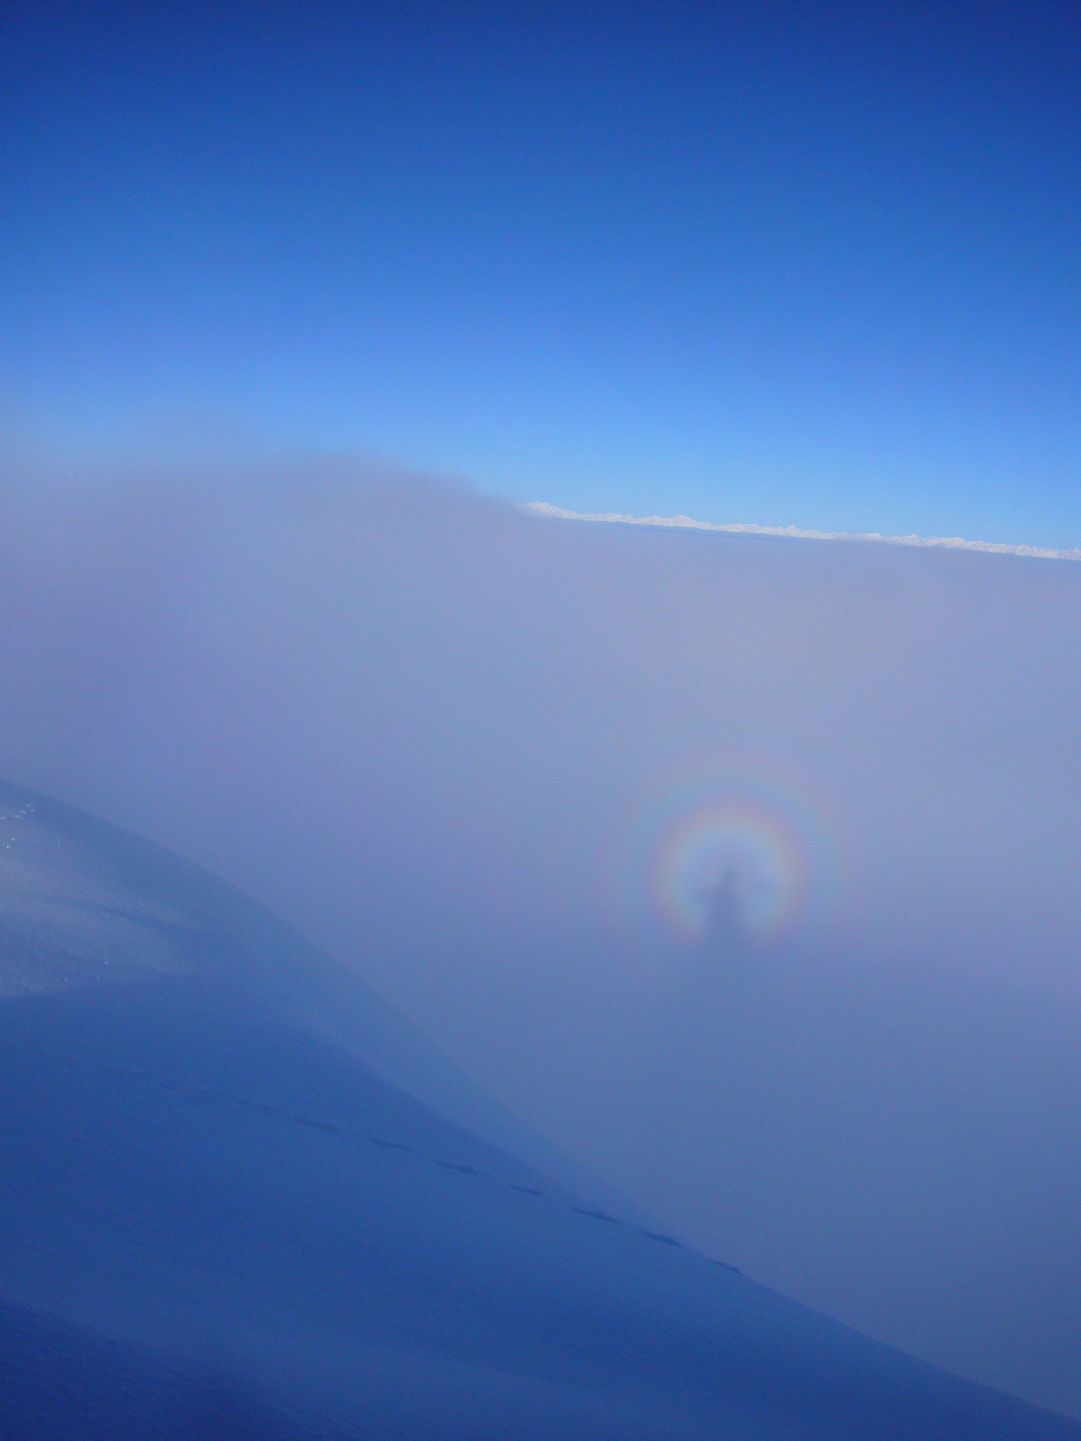 Foto scattata dalla cima del M. Fravort - gennaio 2010